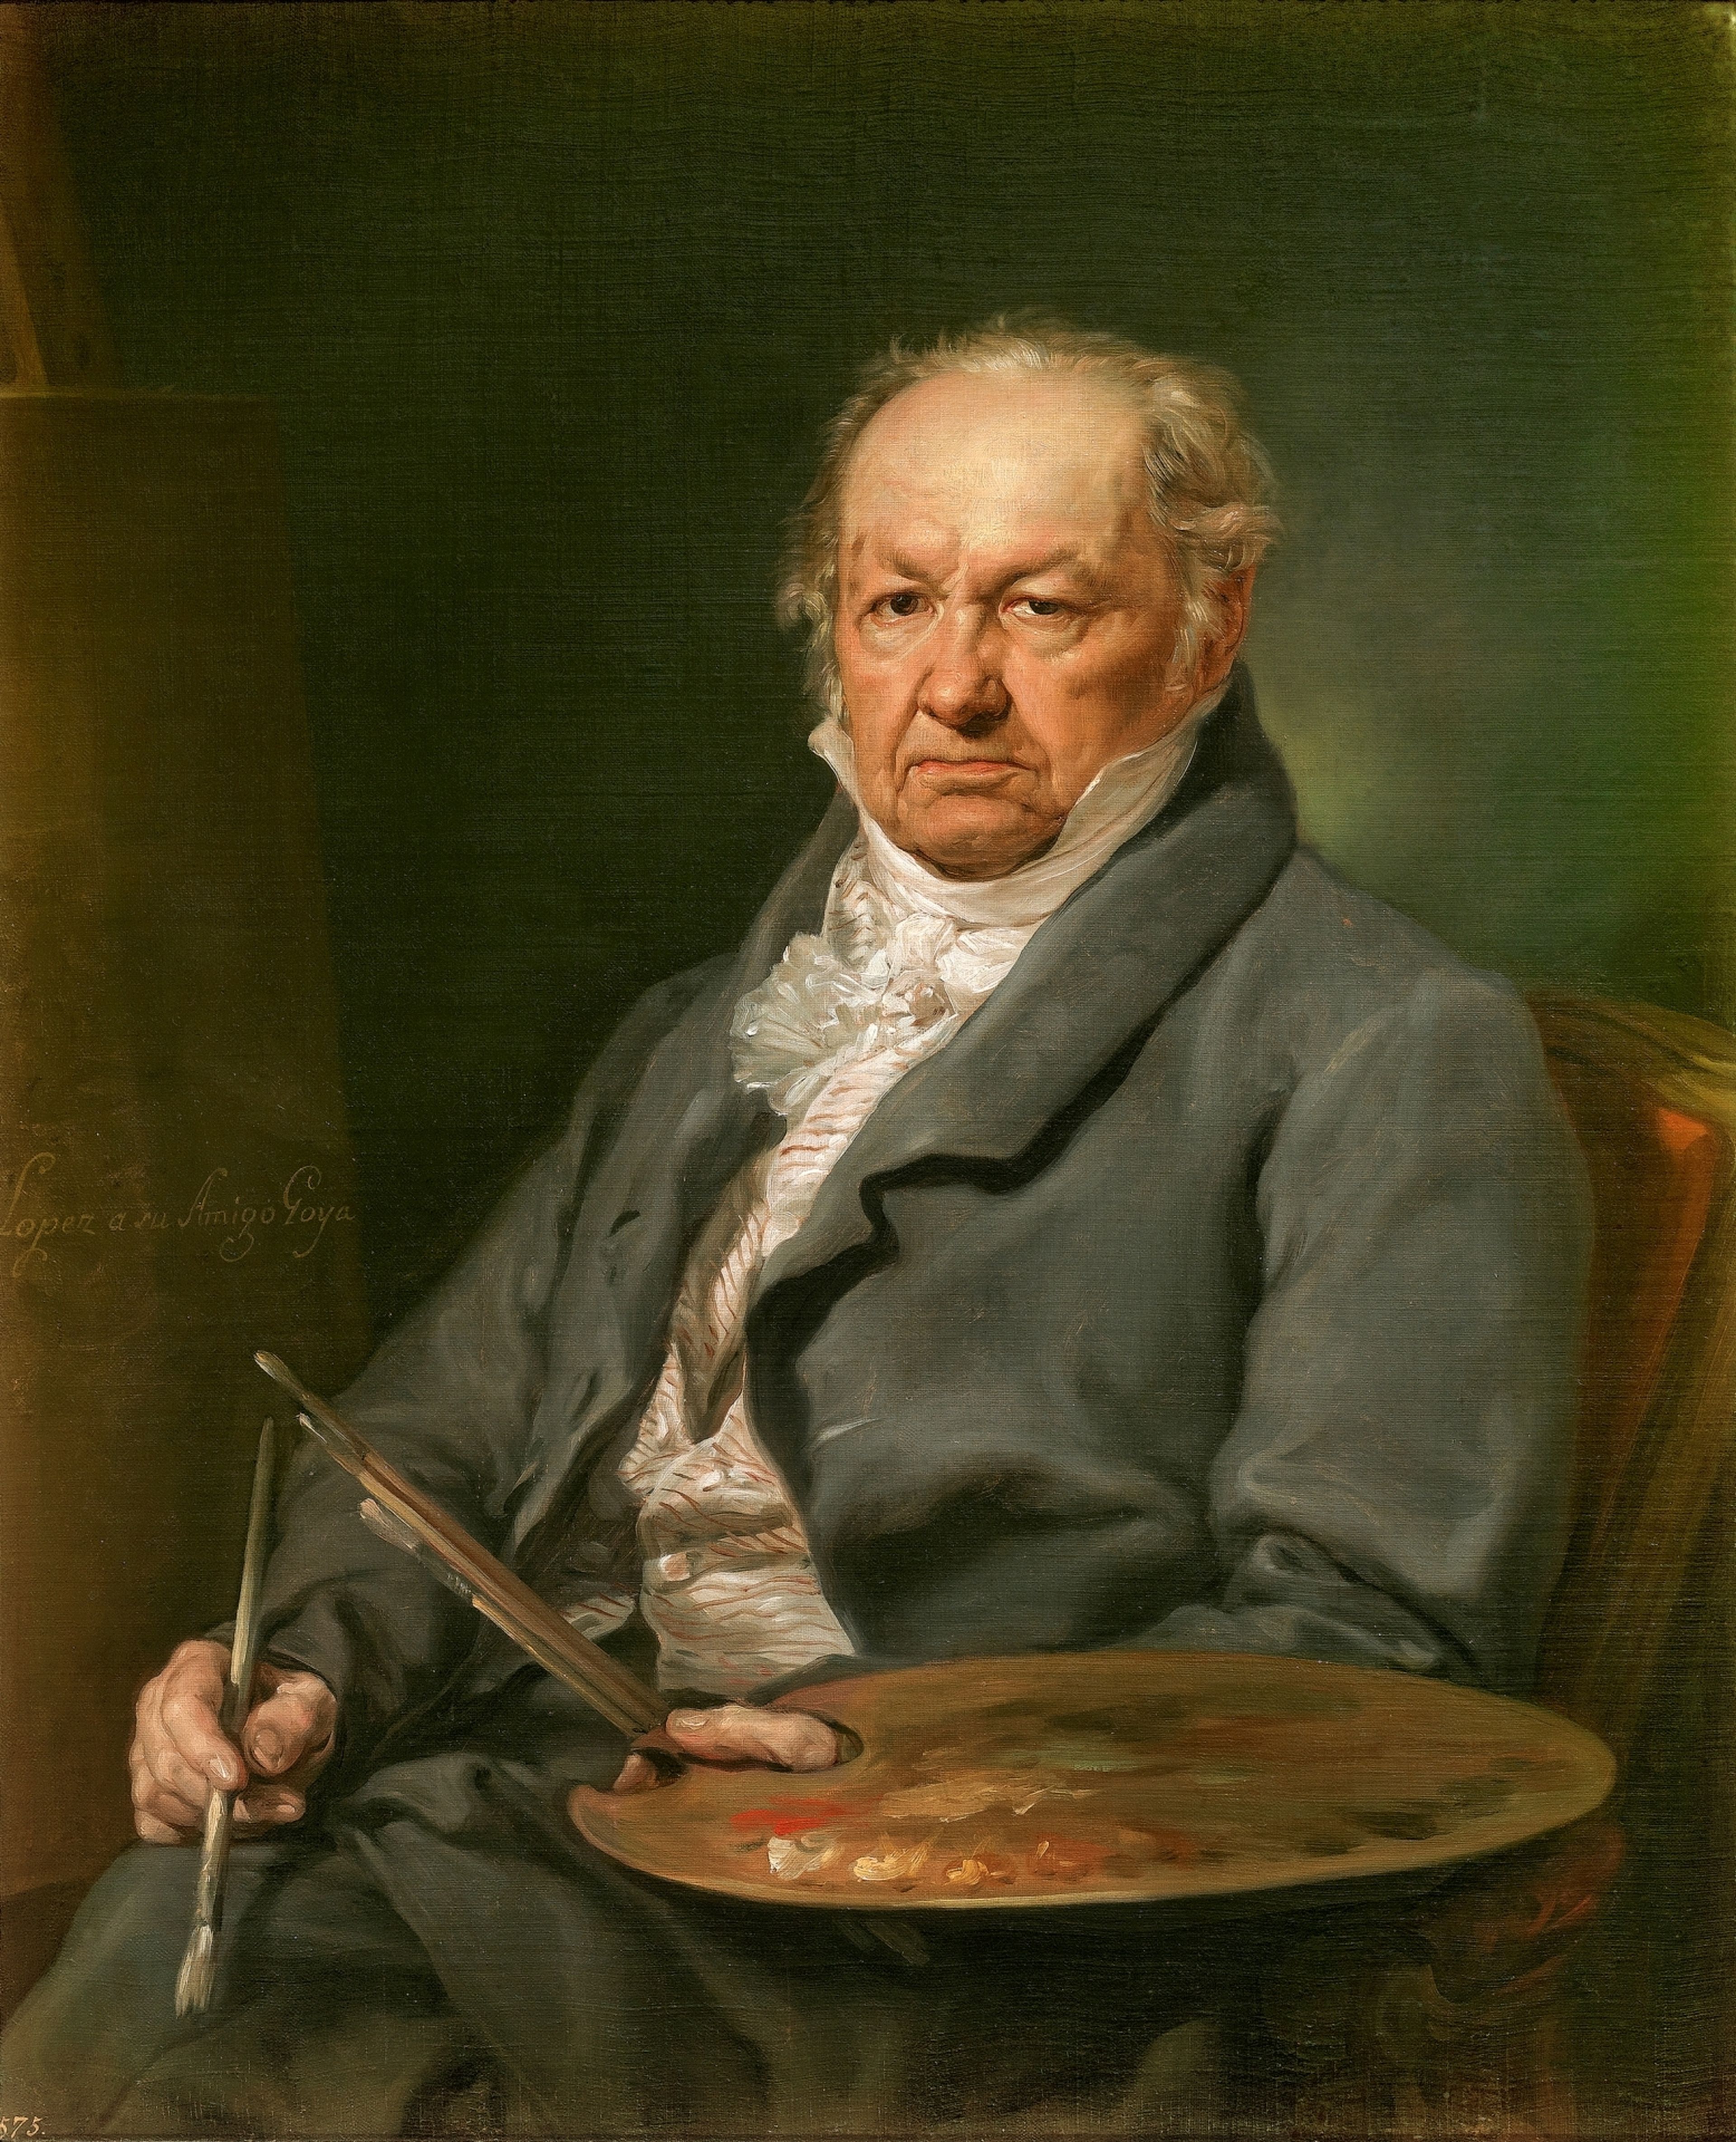  Retrato del pintor Francisco de Goya, por Vicente López.